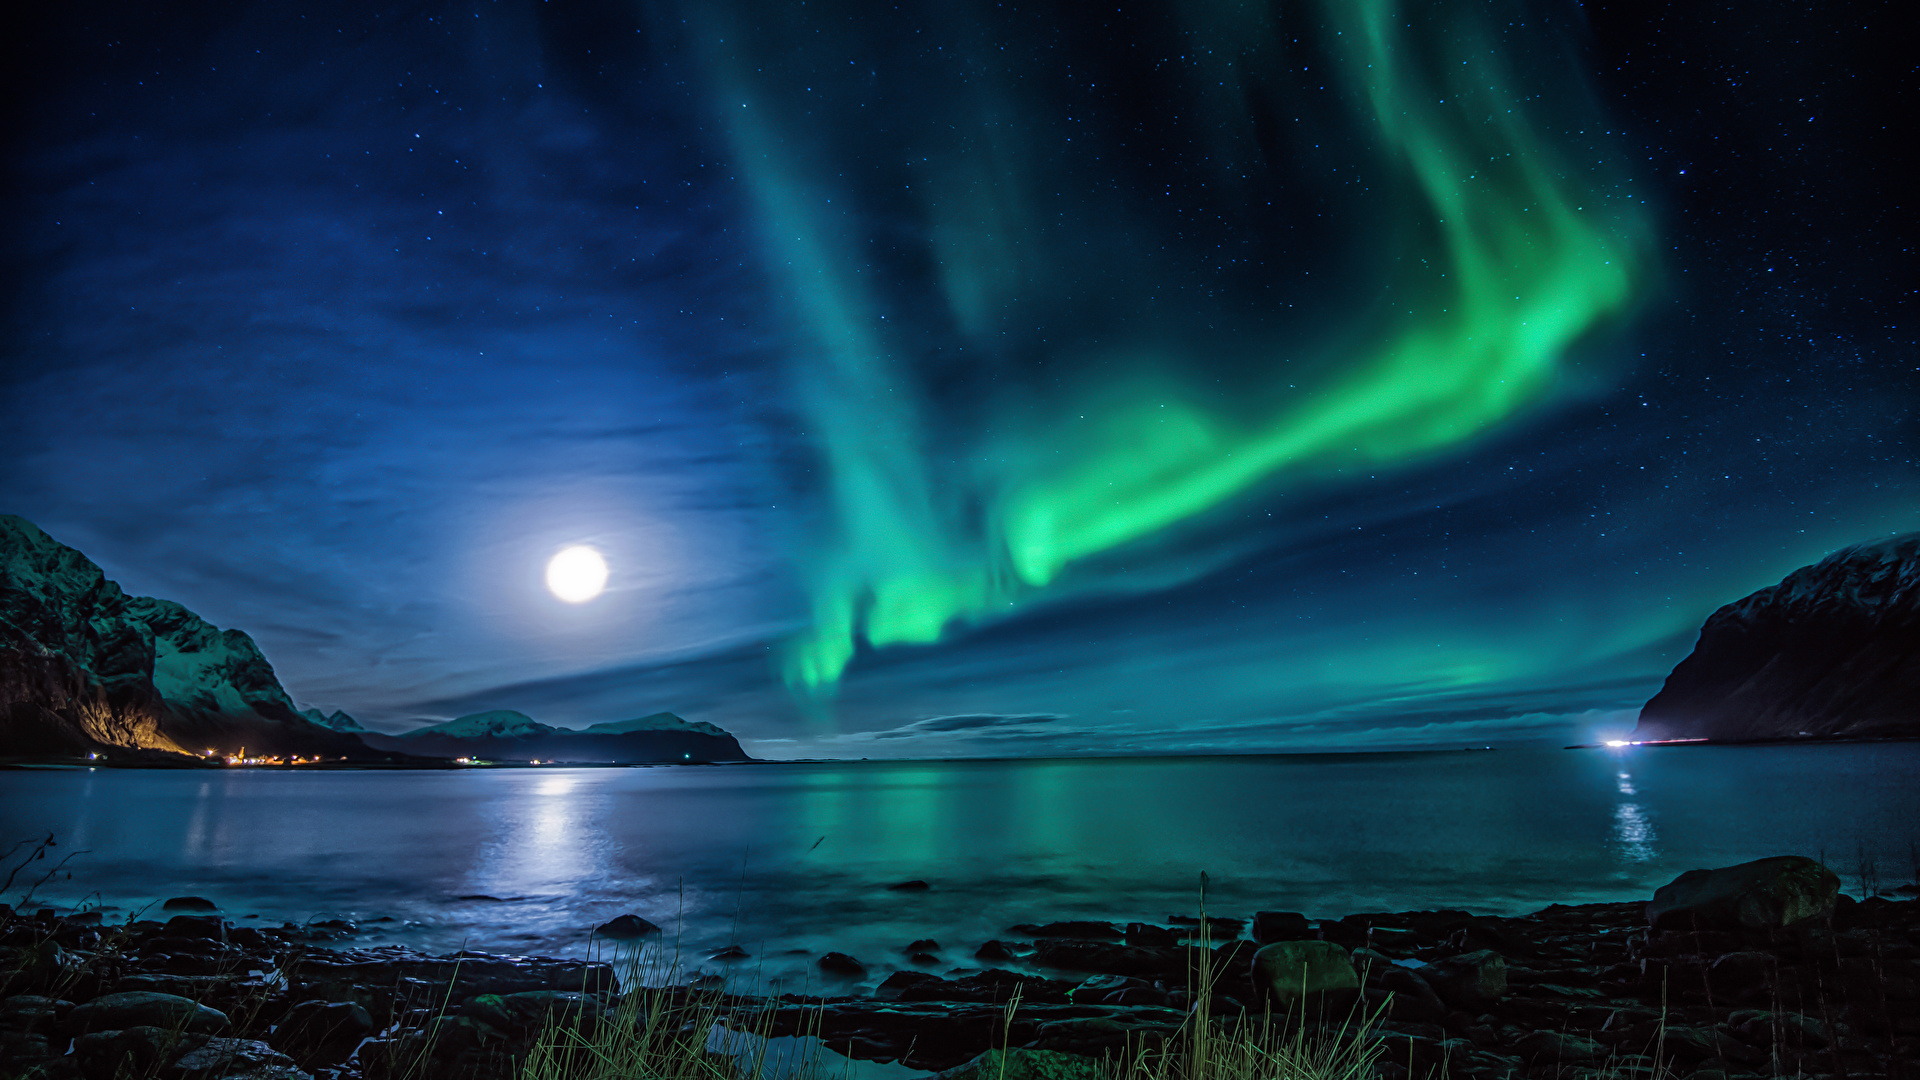 壁紙 19x1080 ノルウェー ロフォーテン諸島 川 風景写真 オーロラ 夜 月 自然 ダウンロード 写真